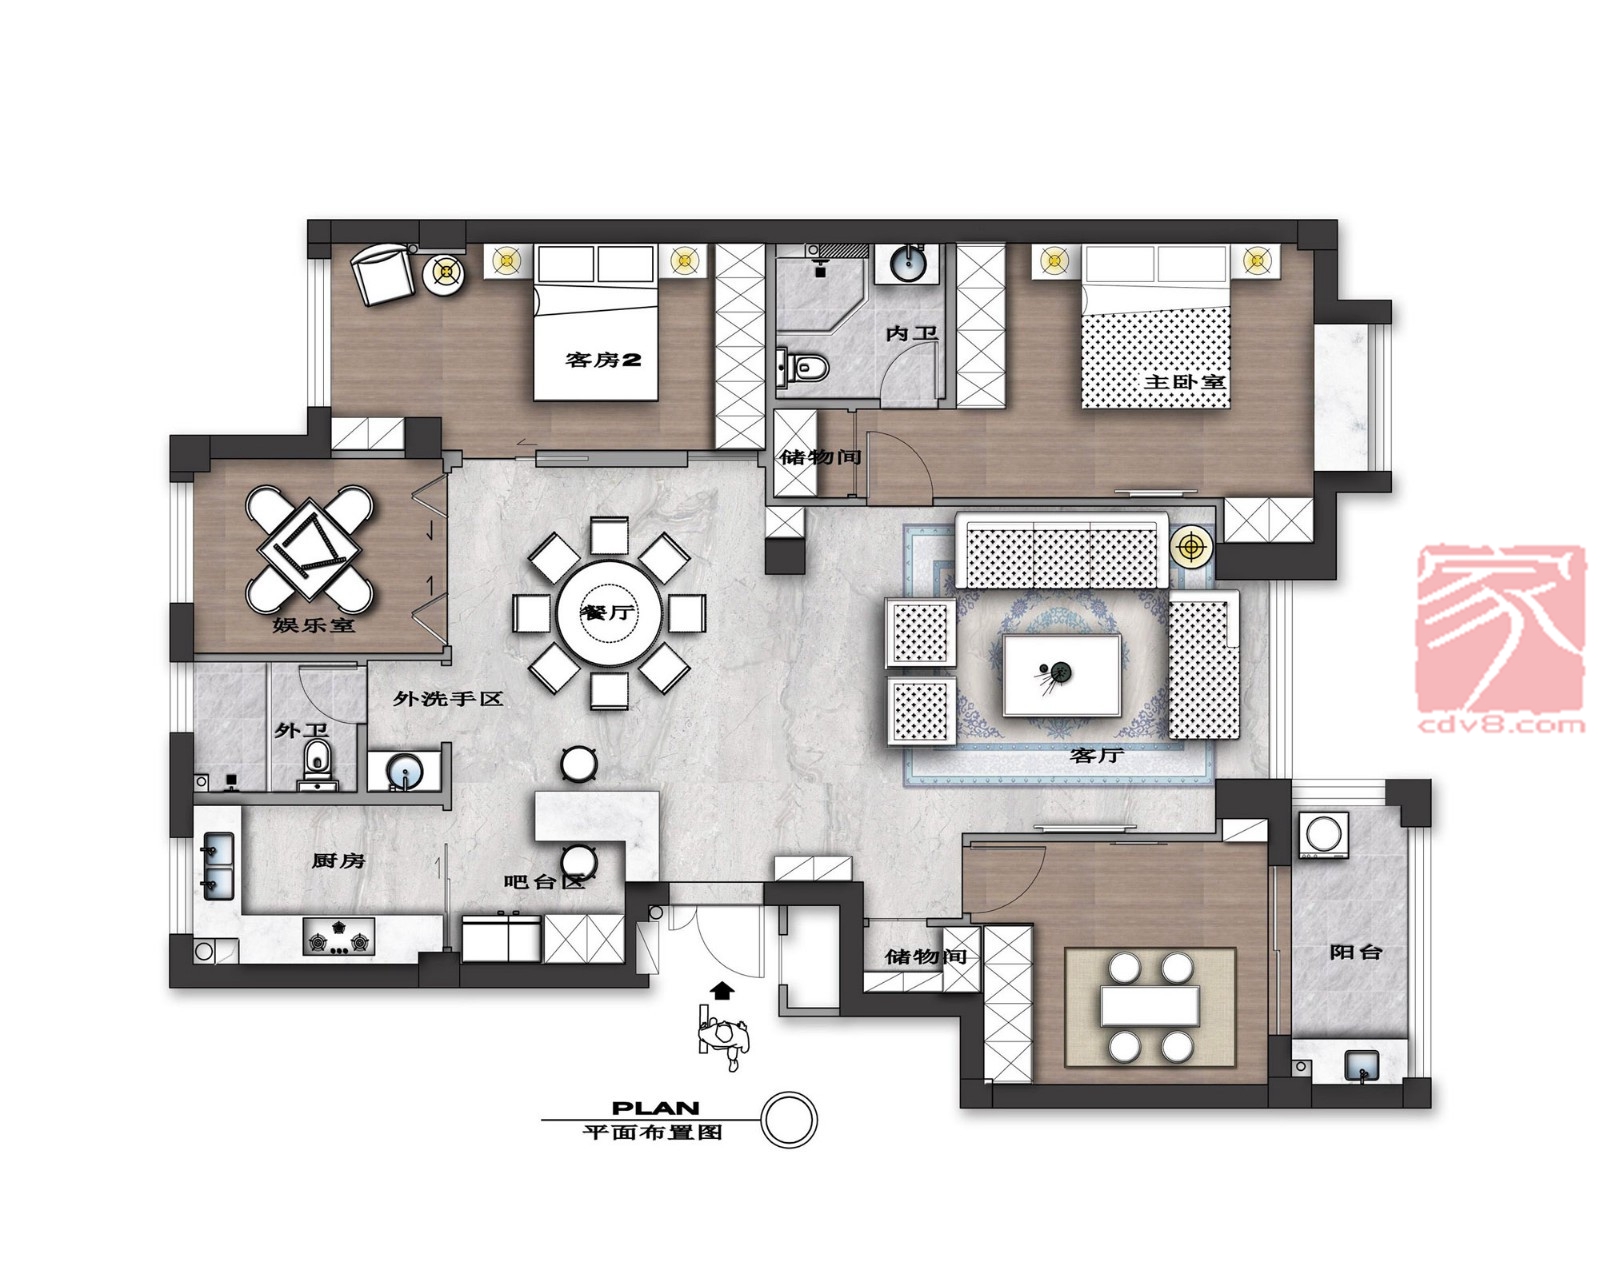 中式装修风格三居室126平方米家装案例-成都家居装修网-家装保姆-罗小红成都家装设计